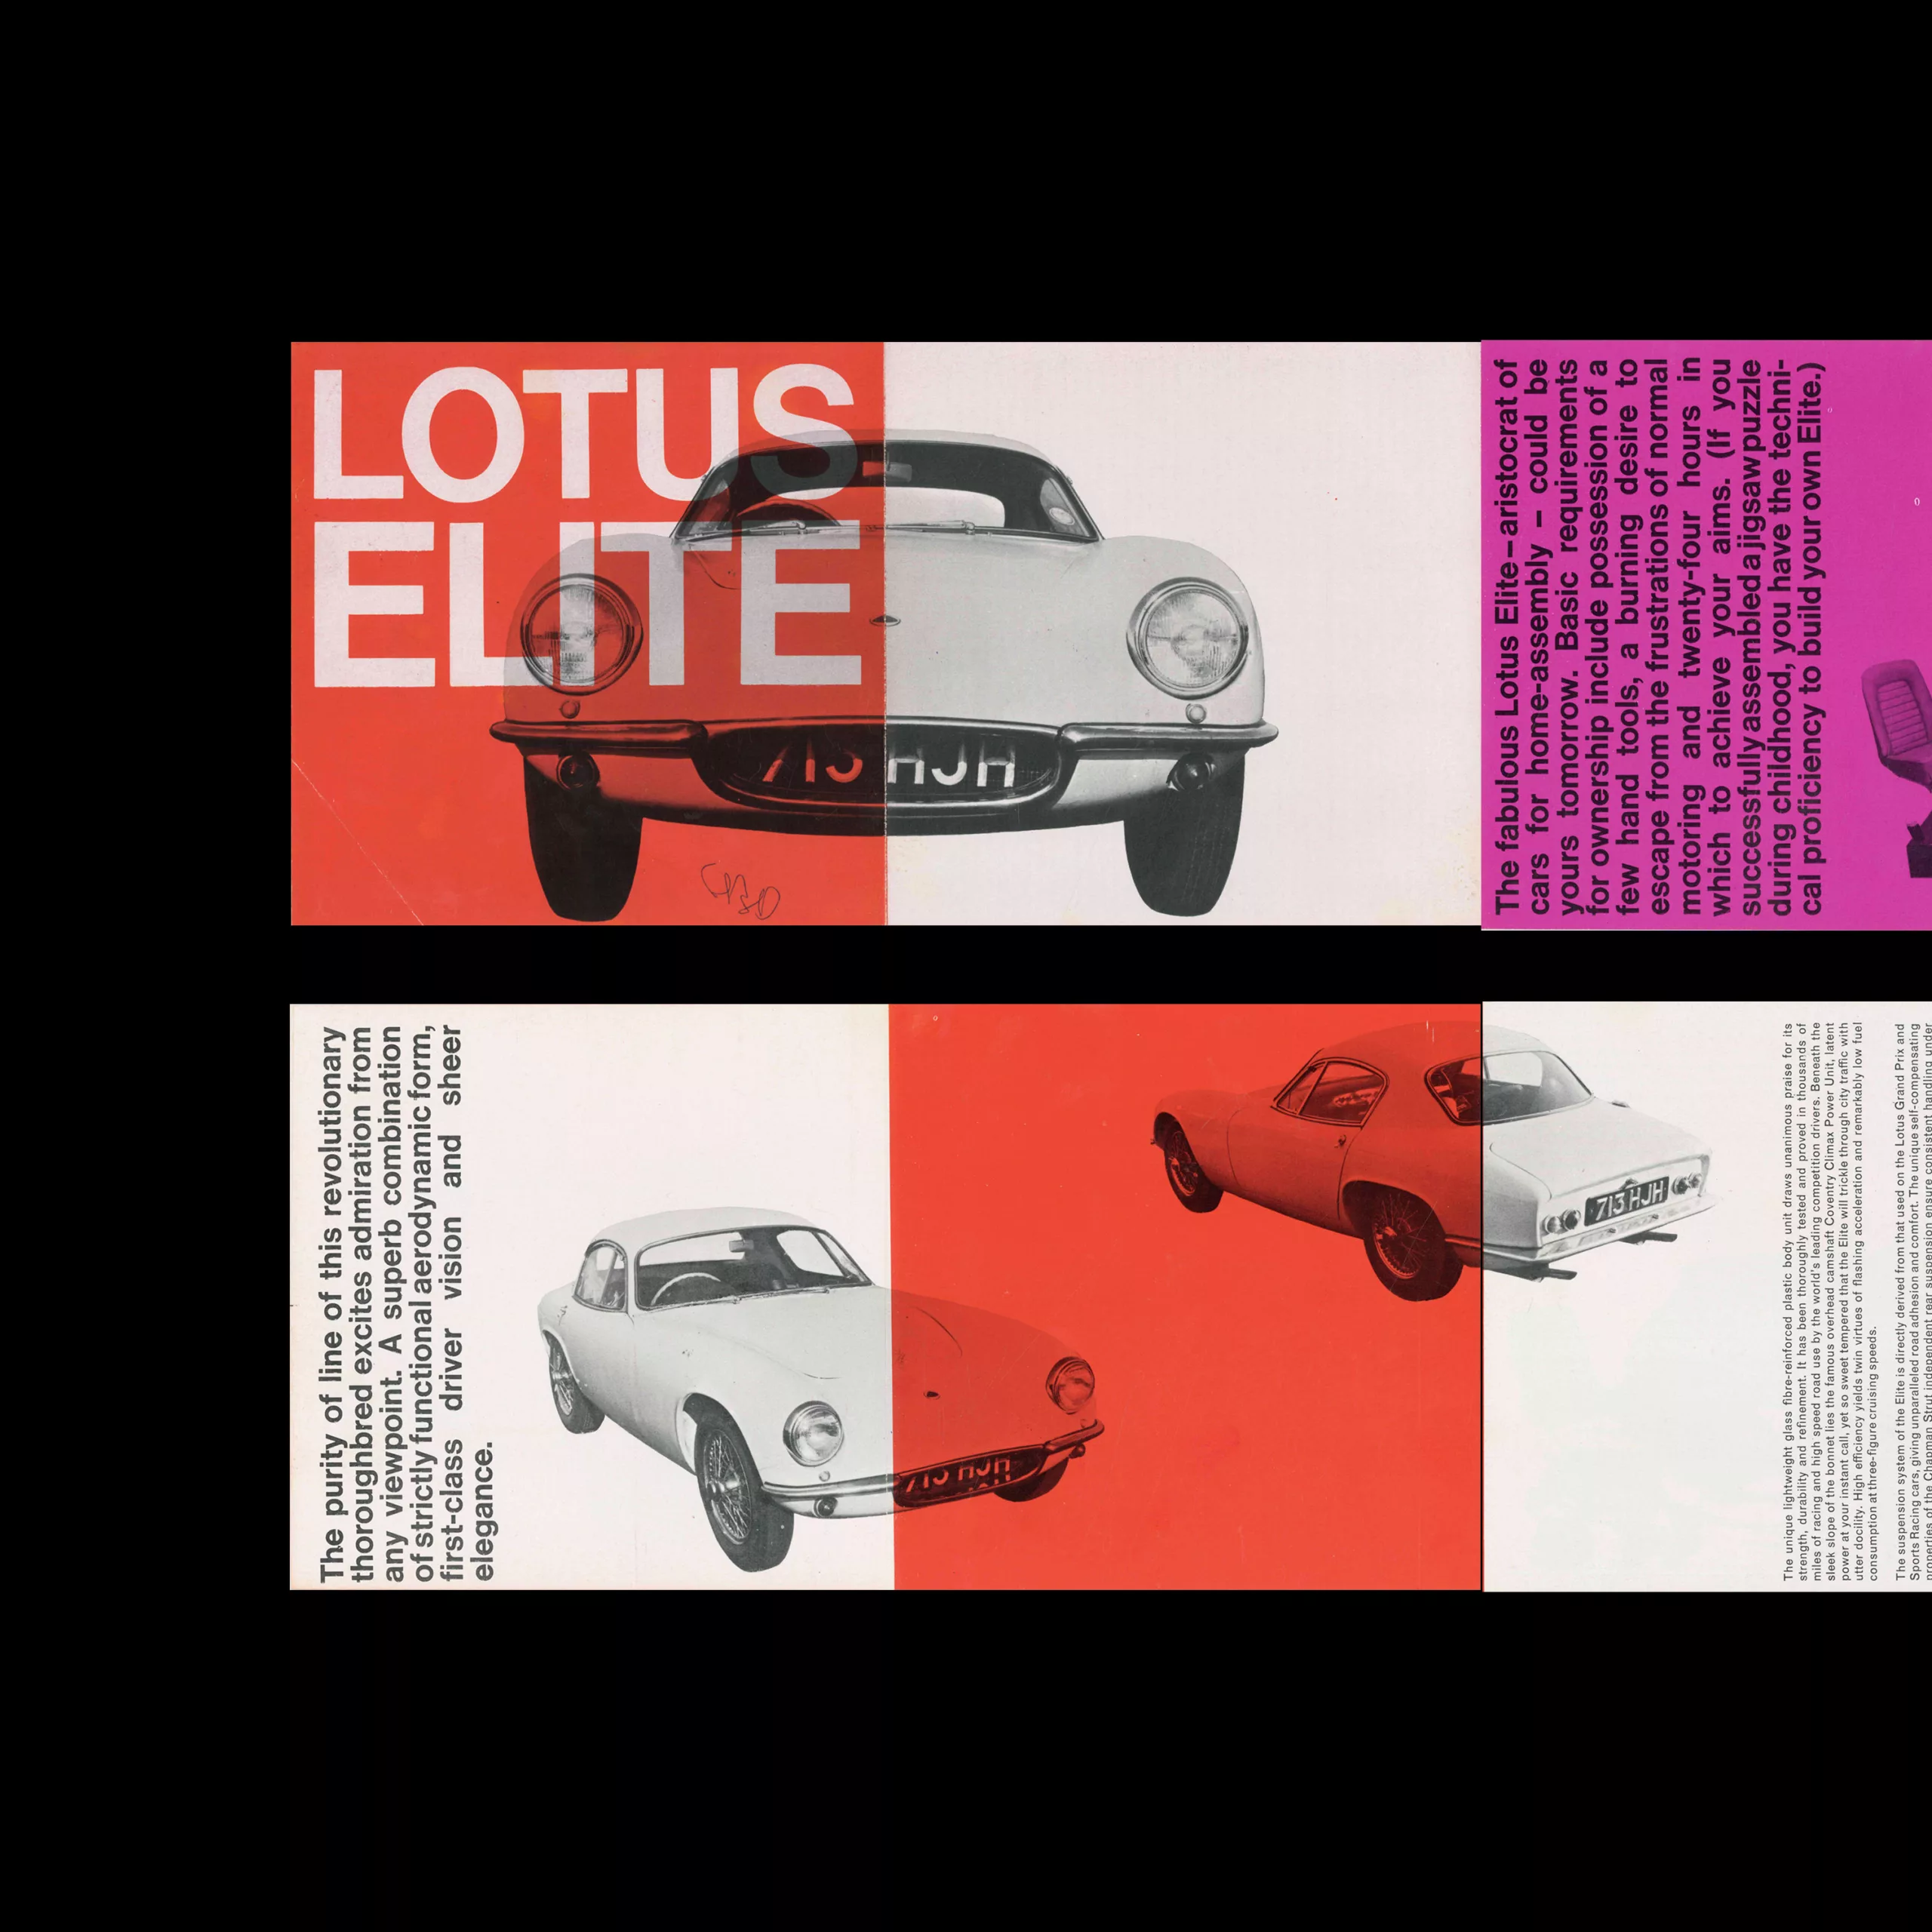 Lotus Elite Series 2 (Type 14), Folded Brochure, 1960. Designed by Derek Birdsall